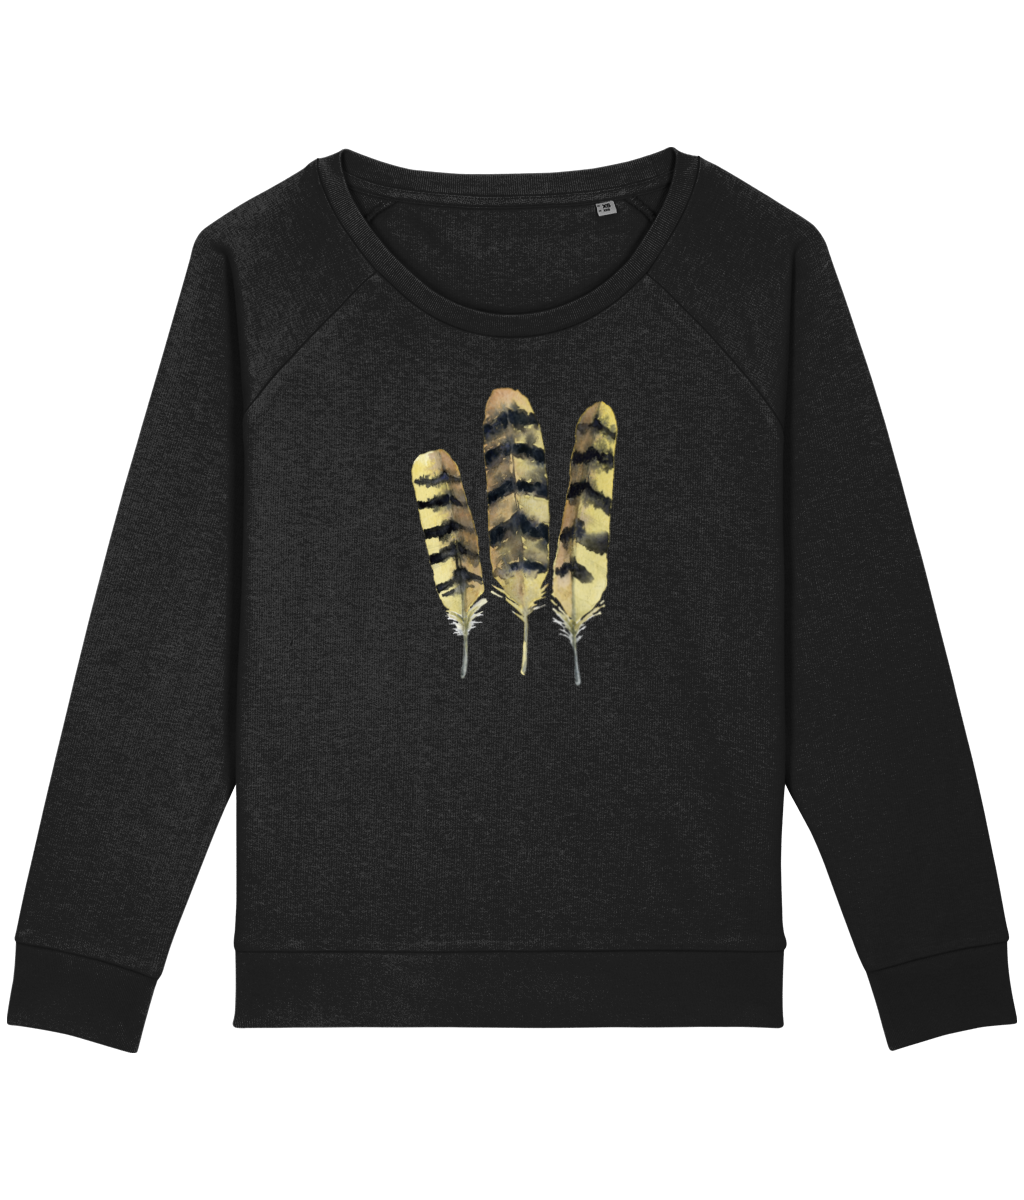 Owl feathers boxy sweatshirt